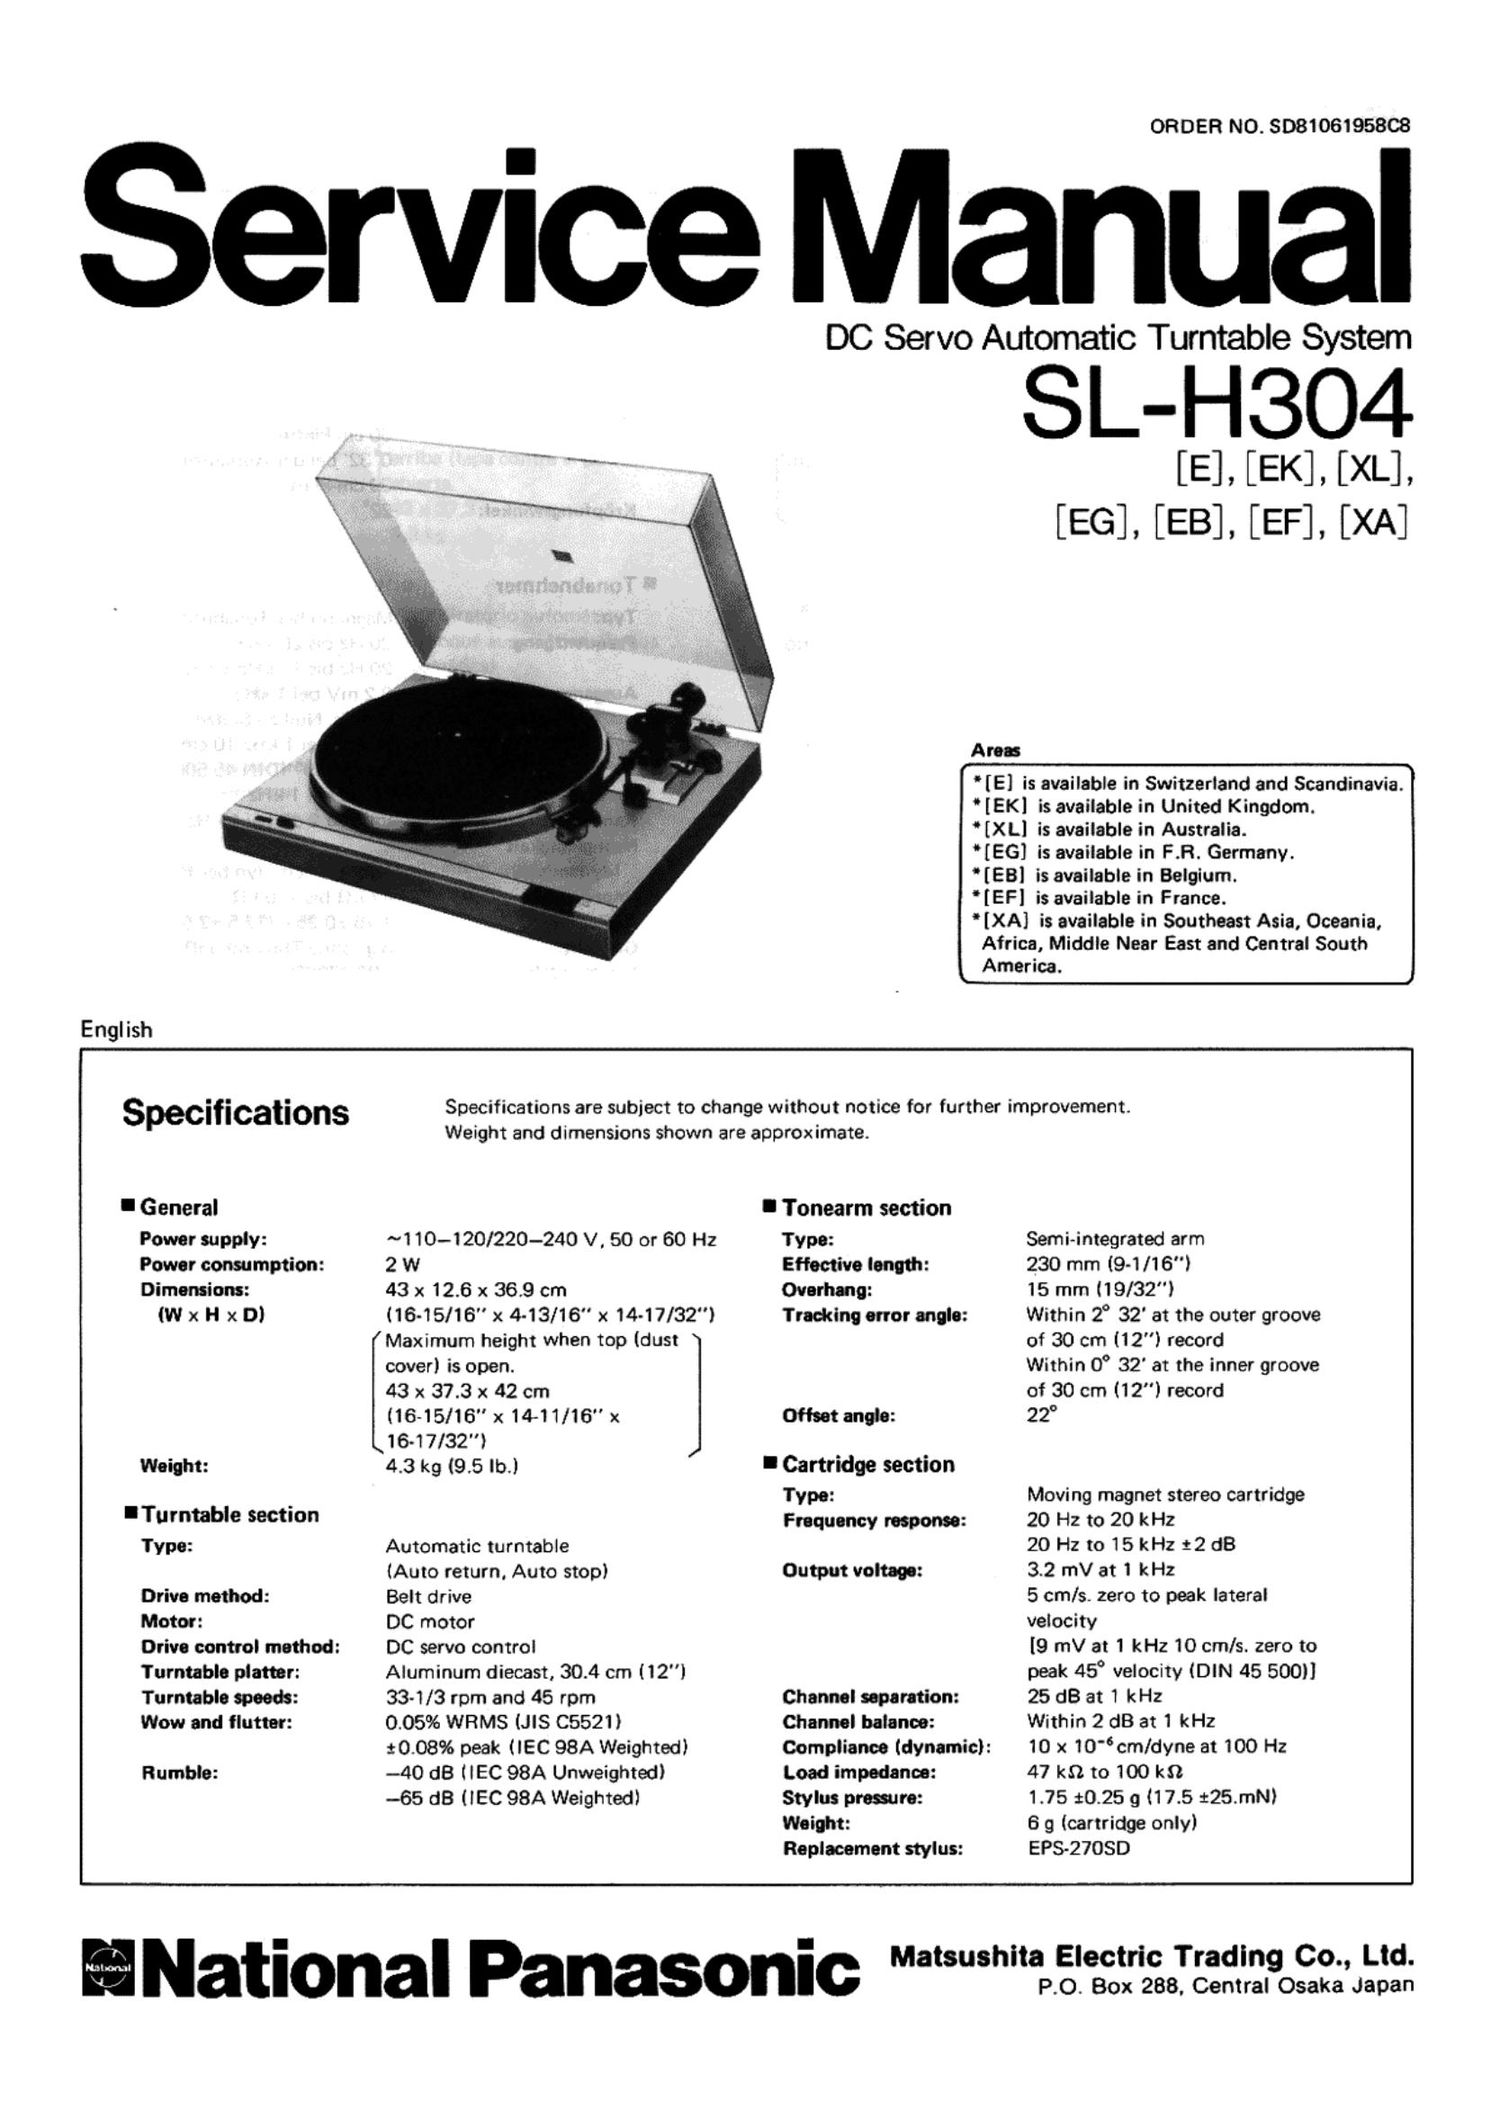 Technics SLH 304 Service Manual